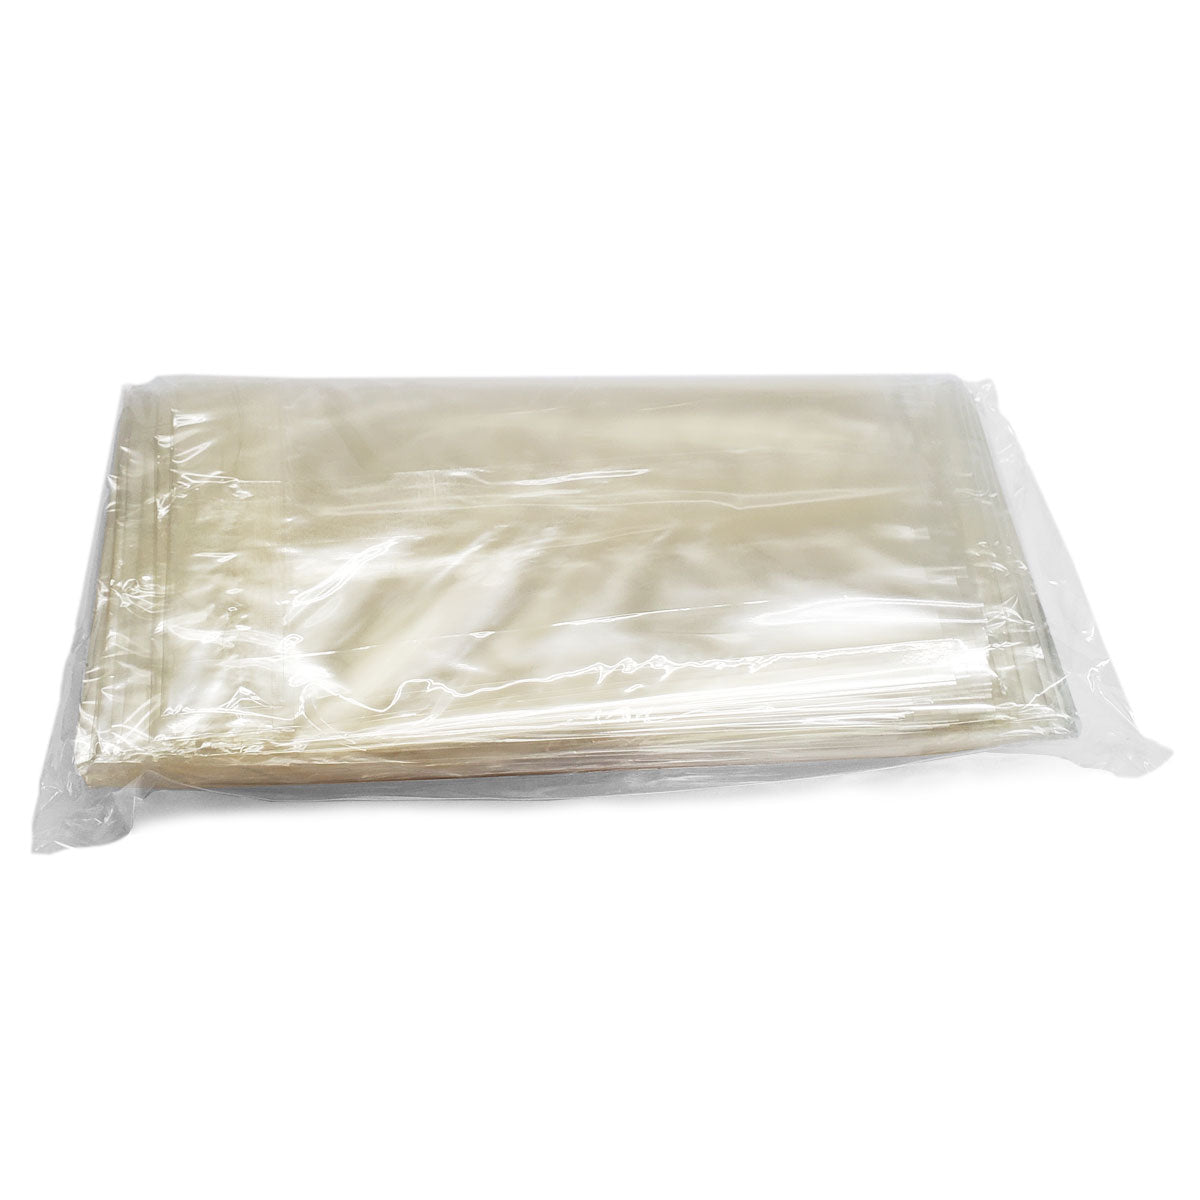 Buy 70pcs Cellophane Bags 6x10